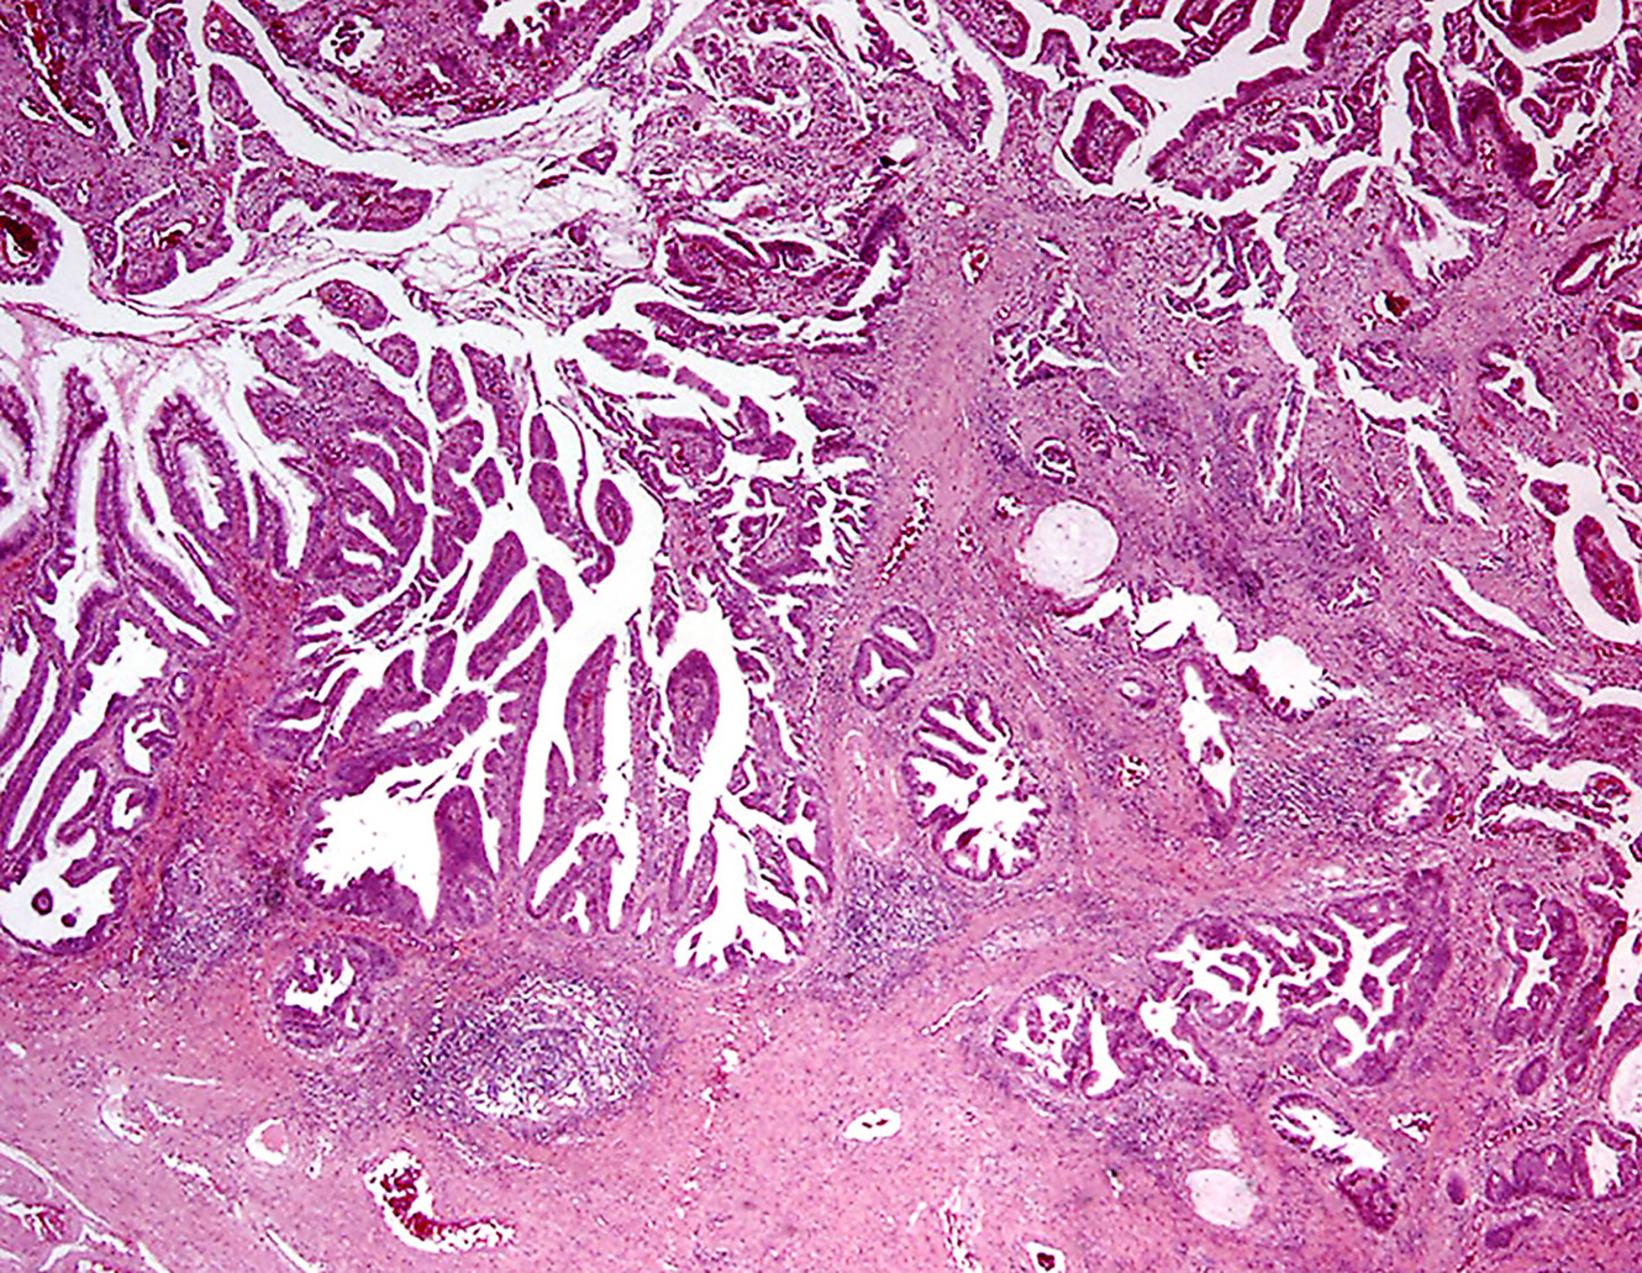 Fig. 18.2, Bartholin gland adenocarcinoma showing papillary and glandular patterns.